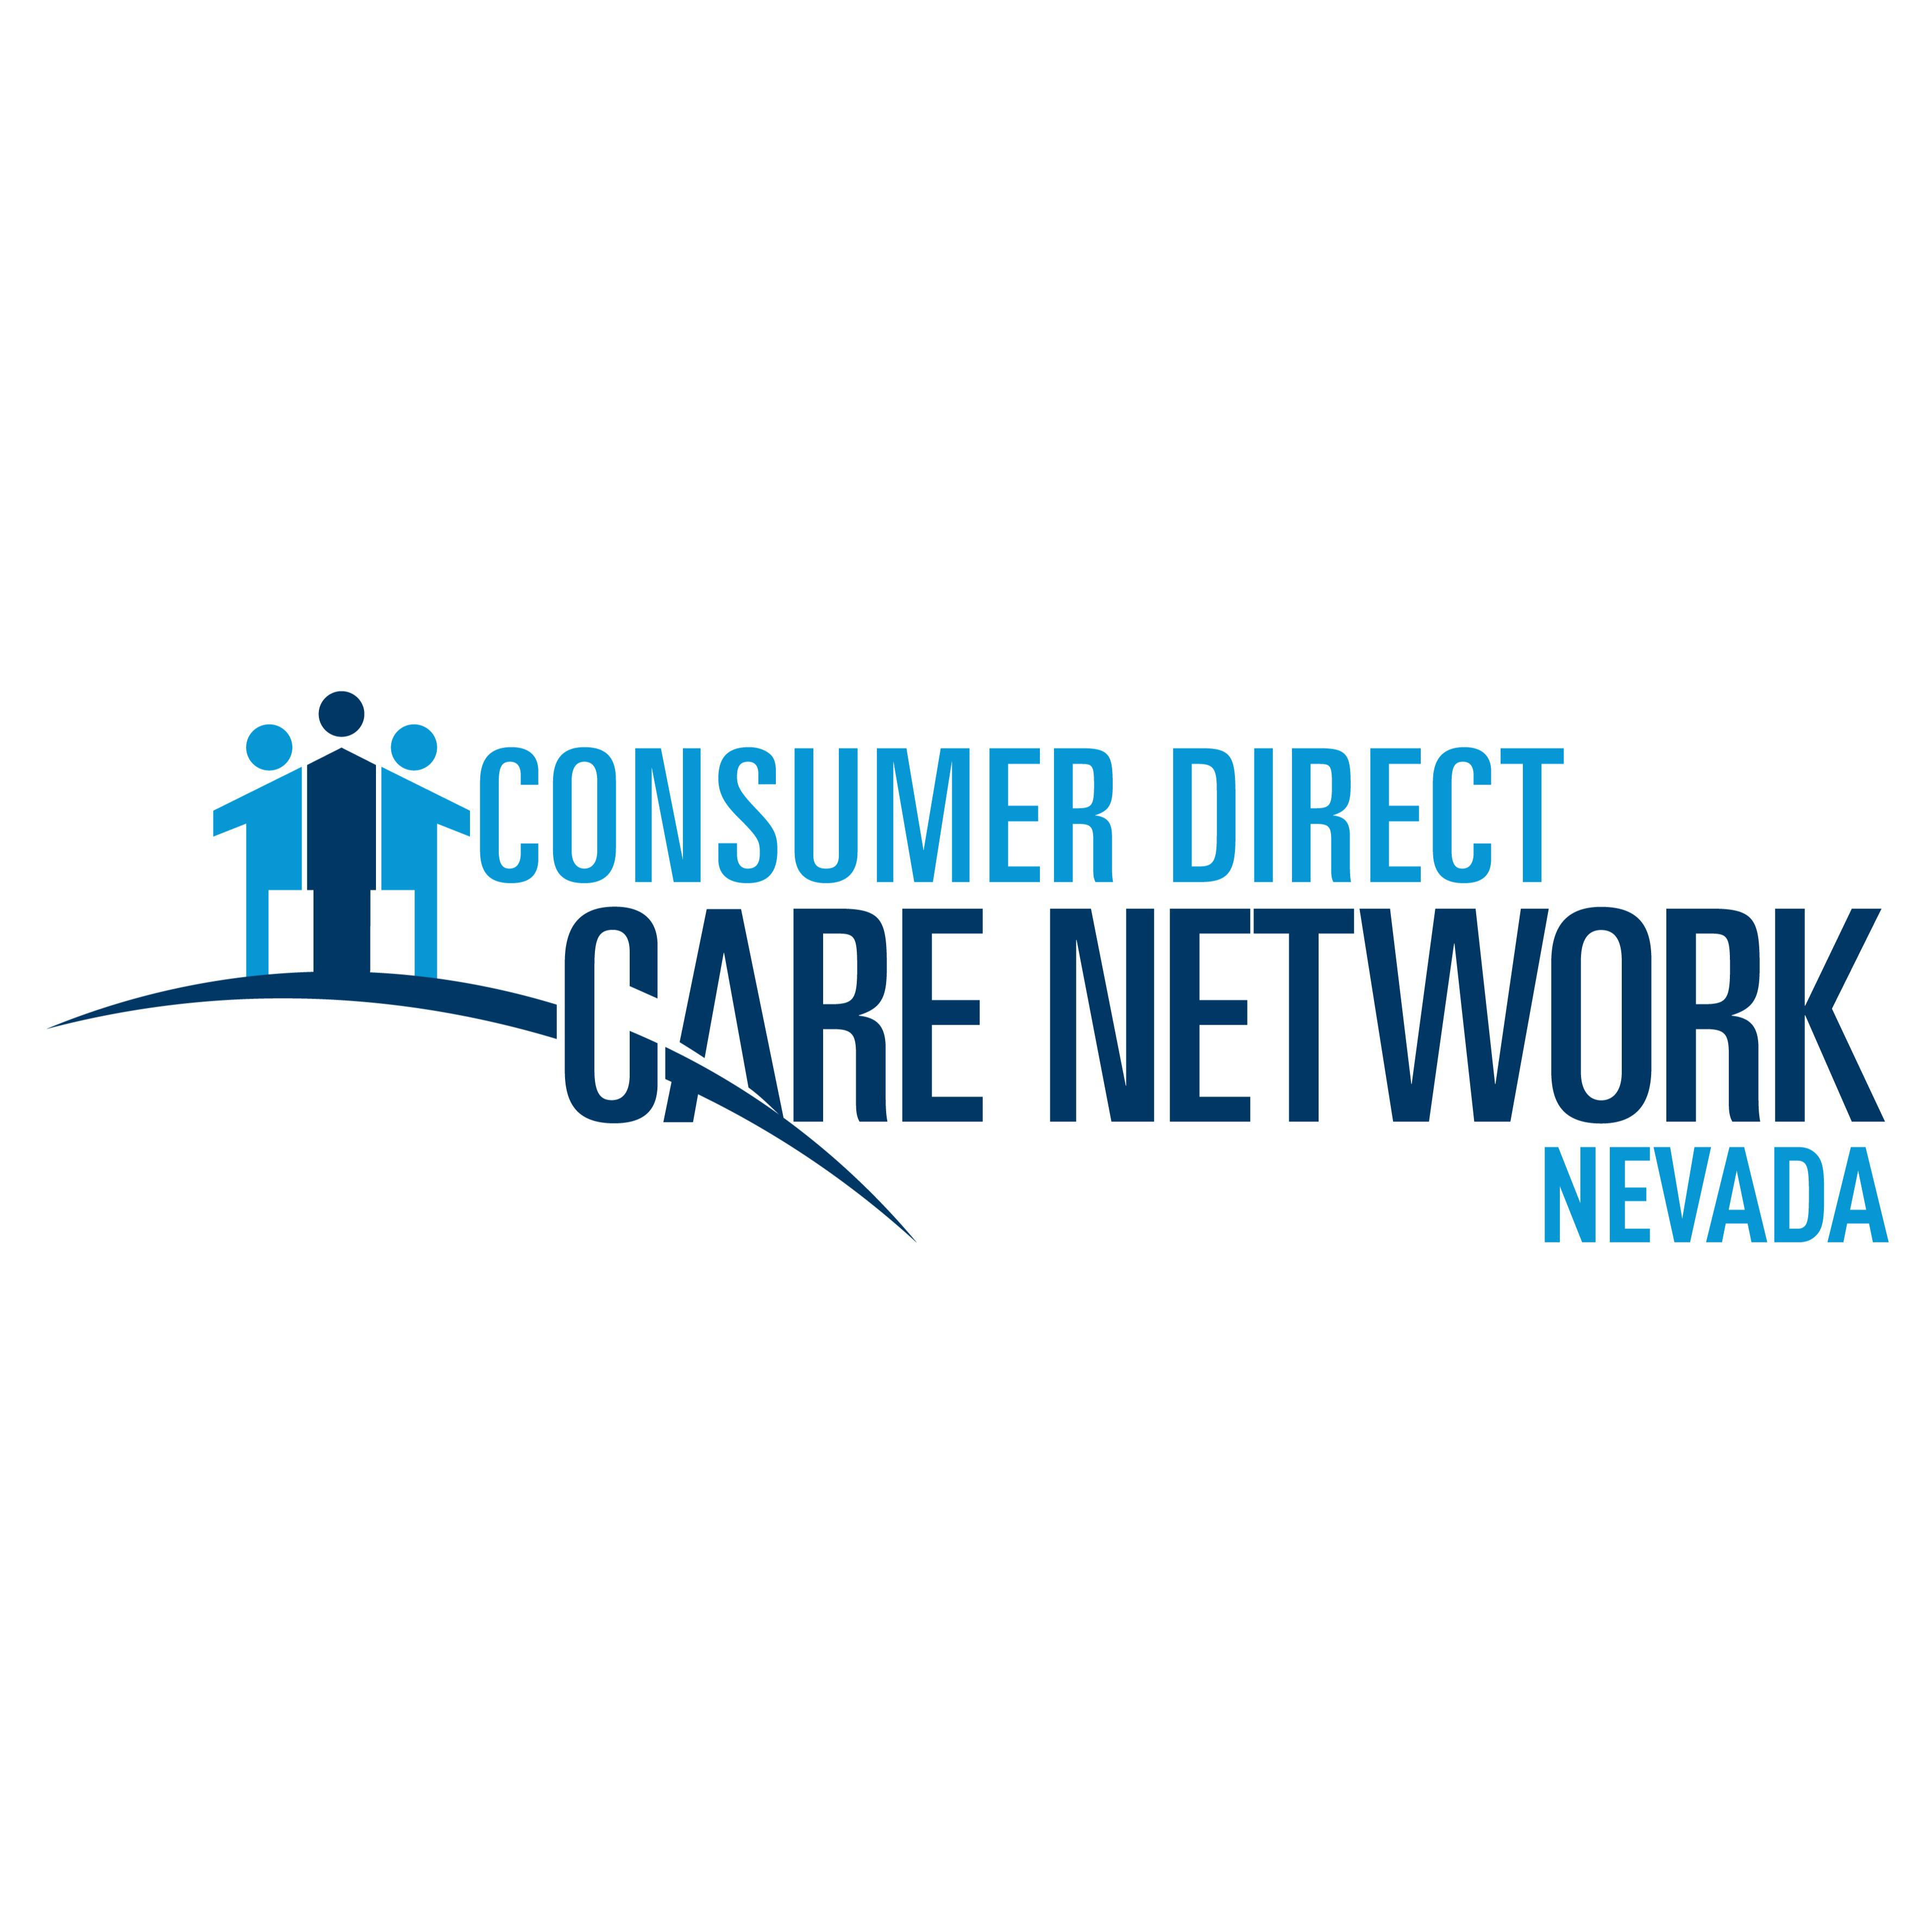 Consumer Direct Care Network Nevada